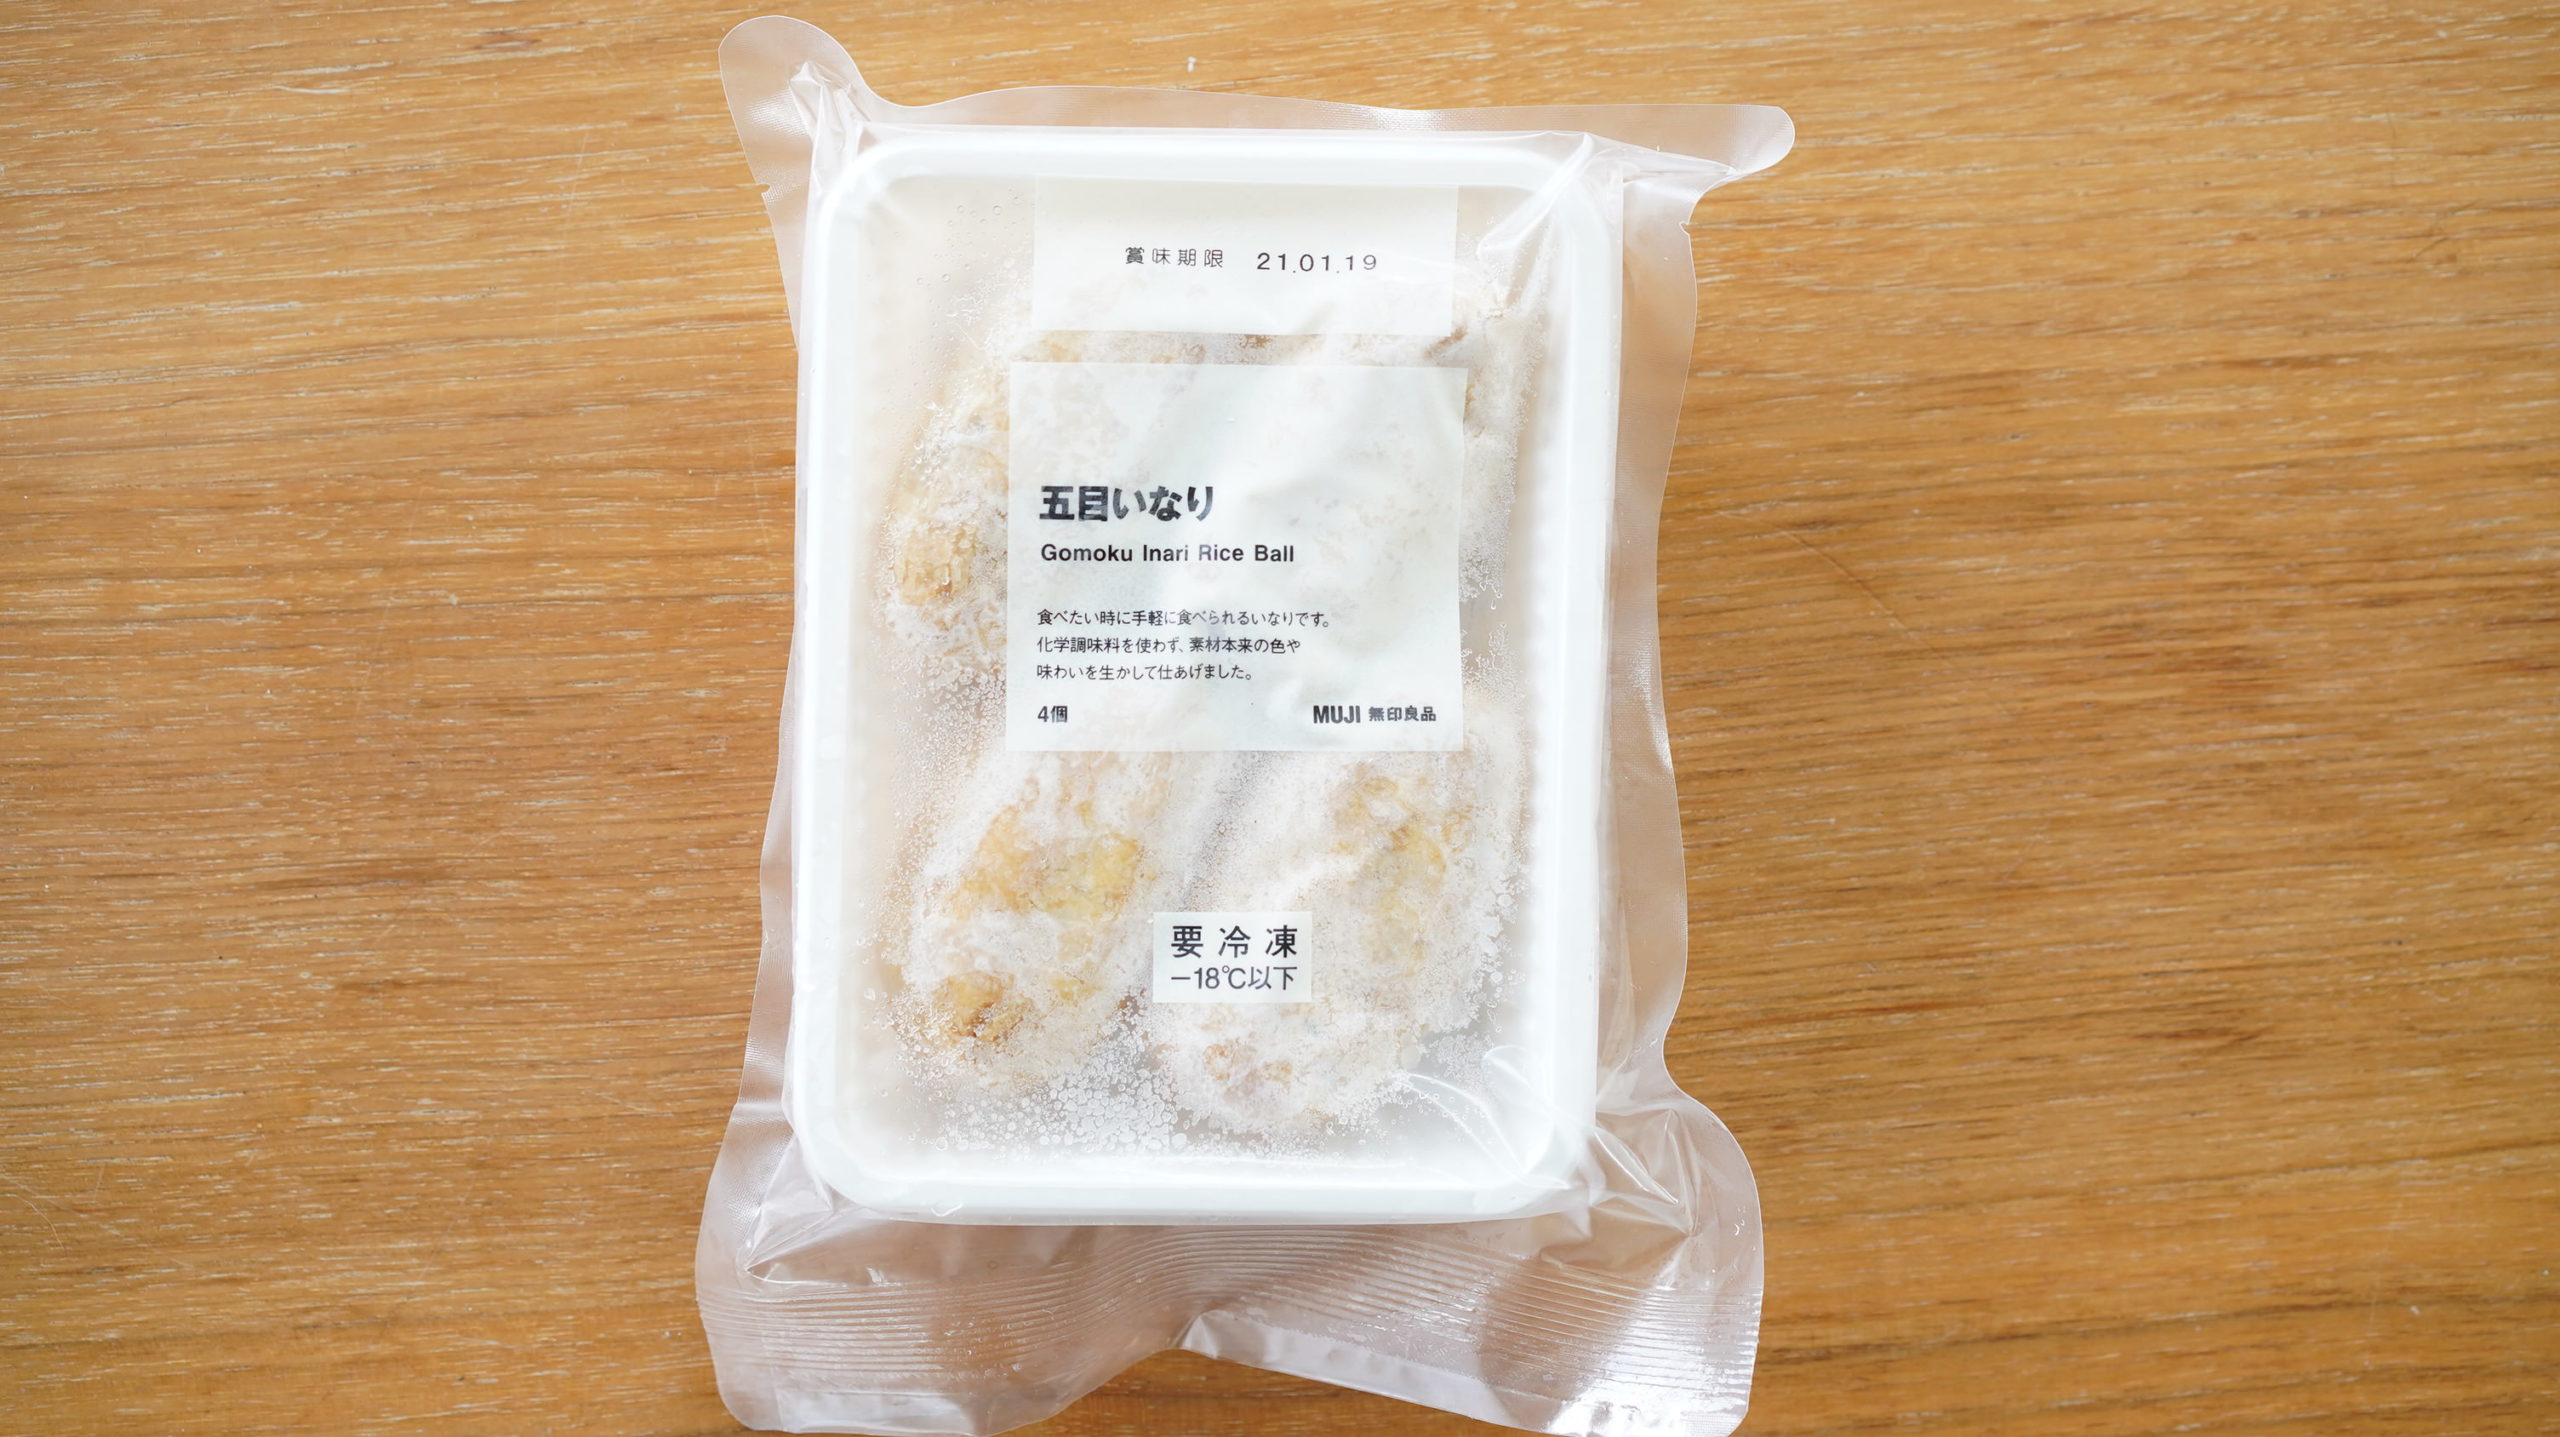 無印良品のおすすめ冷凍食品「五目いなり」のパッケージの写真